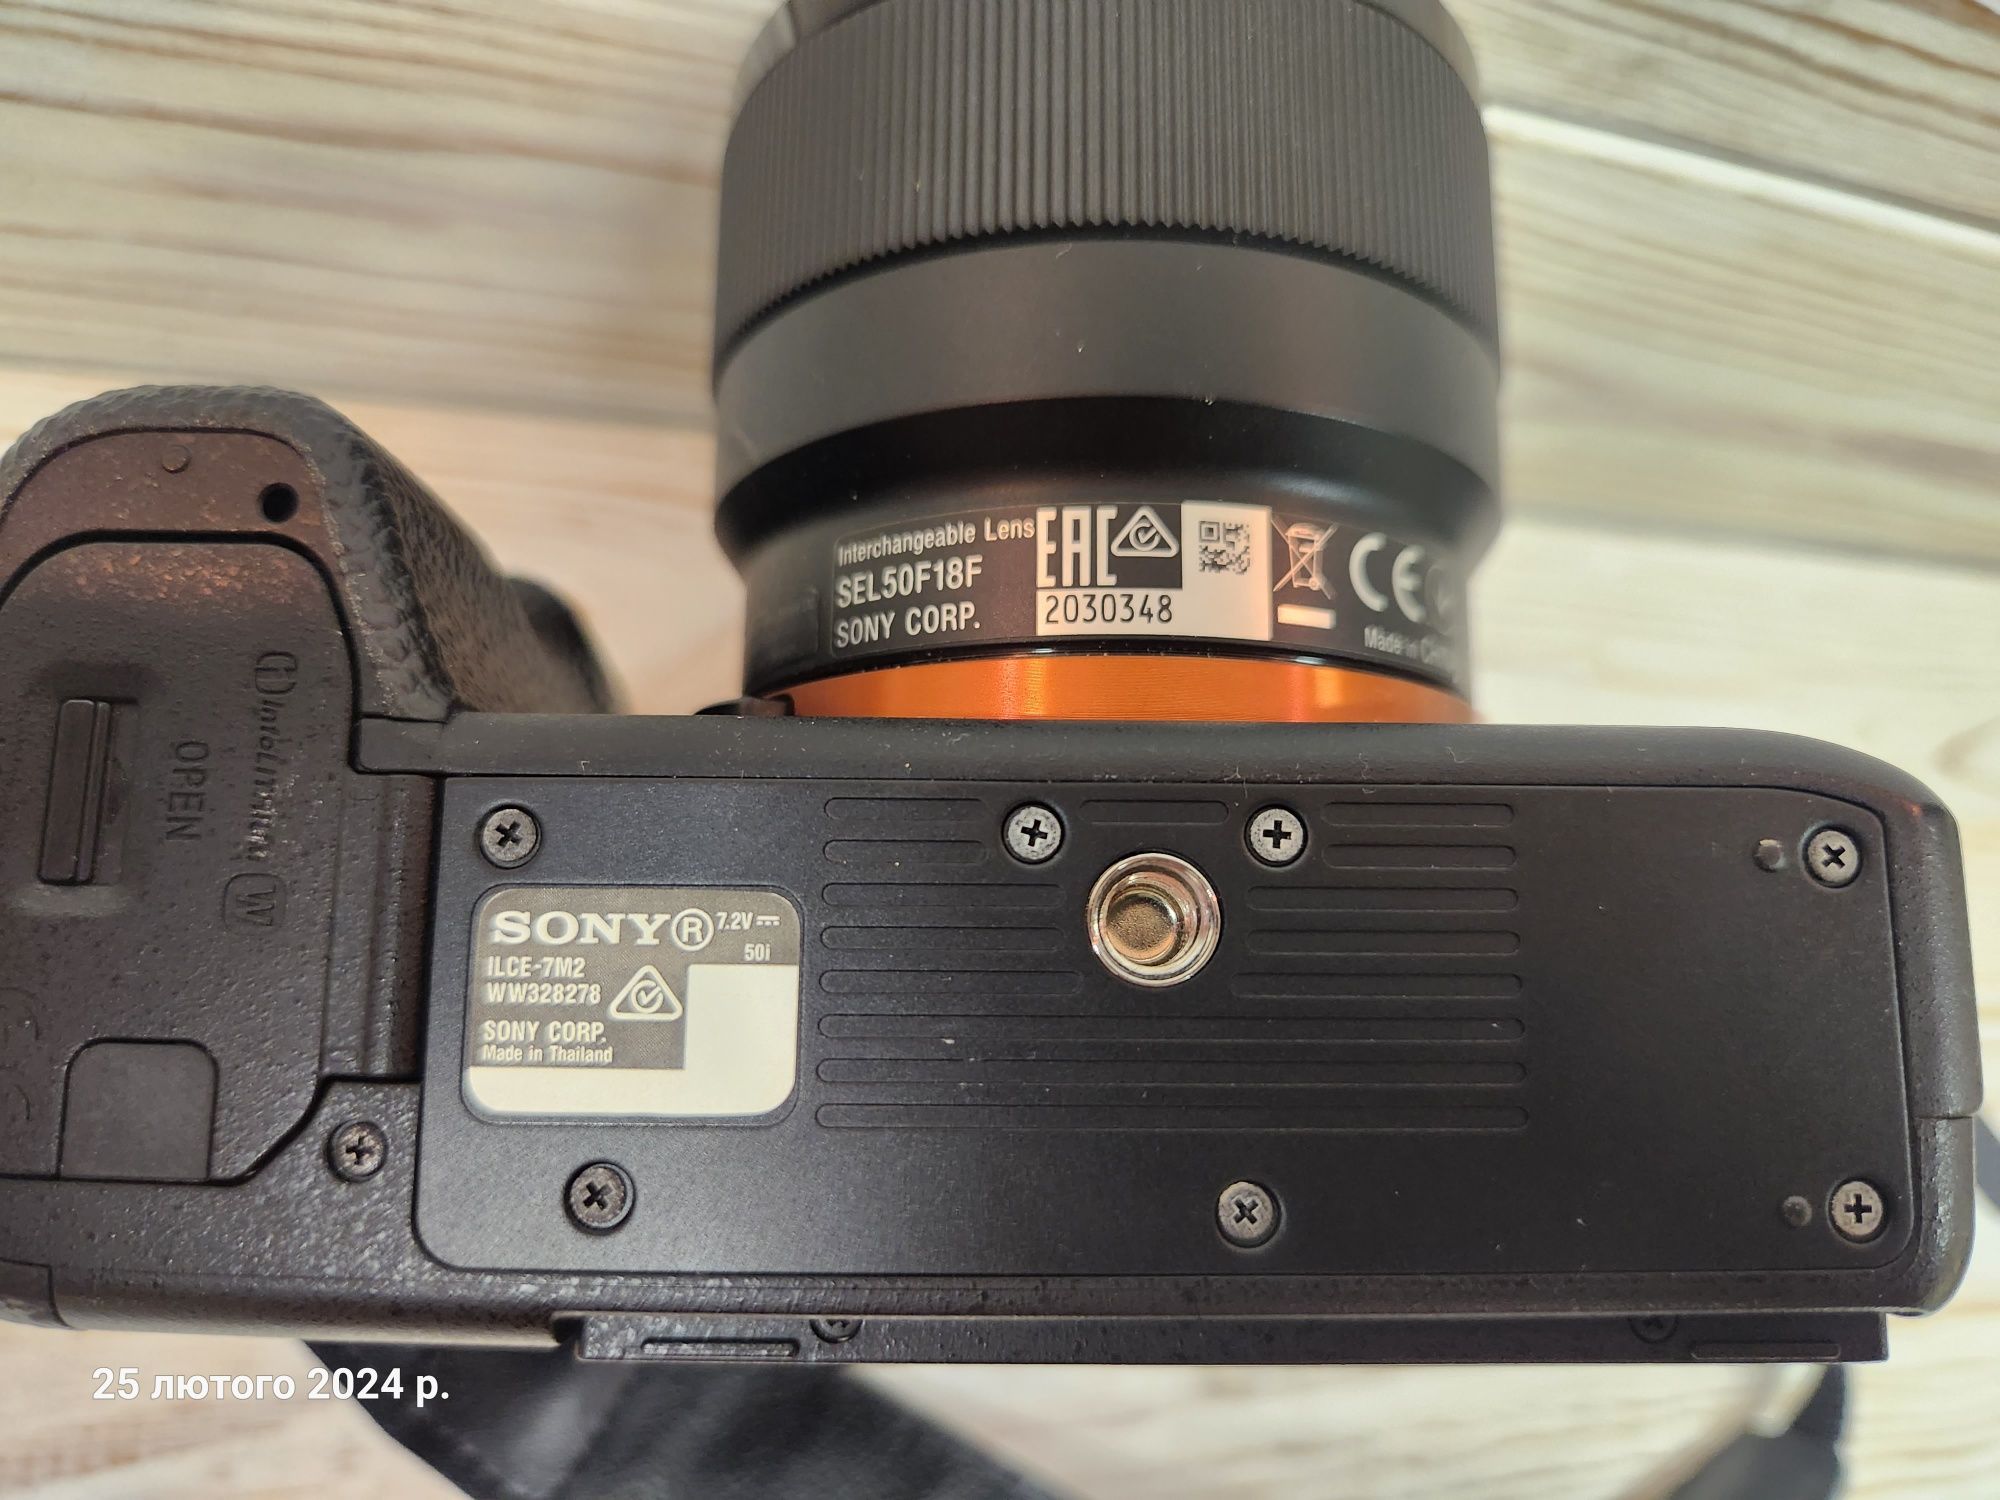 Фотоаппарат Sony A7 II + об'єктив SEL50F18F ( FE 1.8/50 )